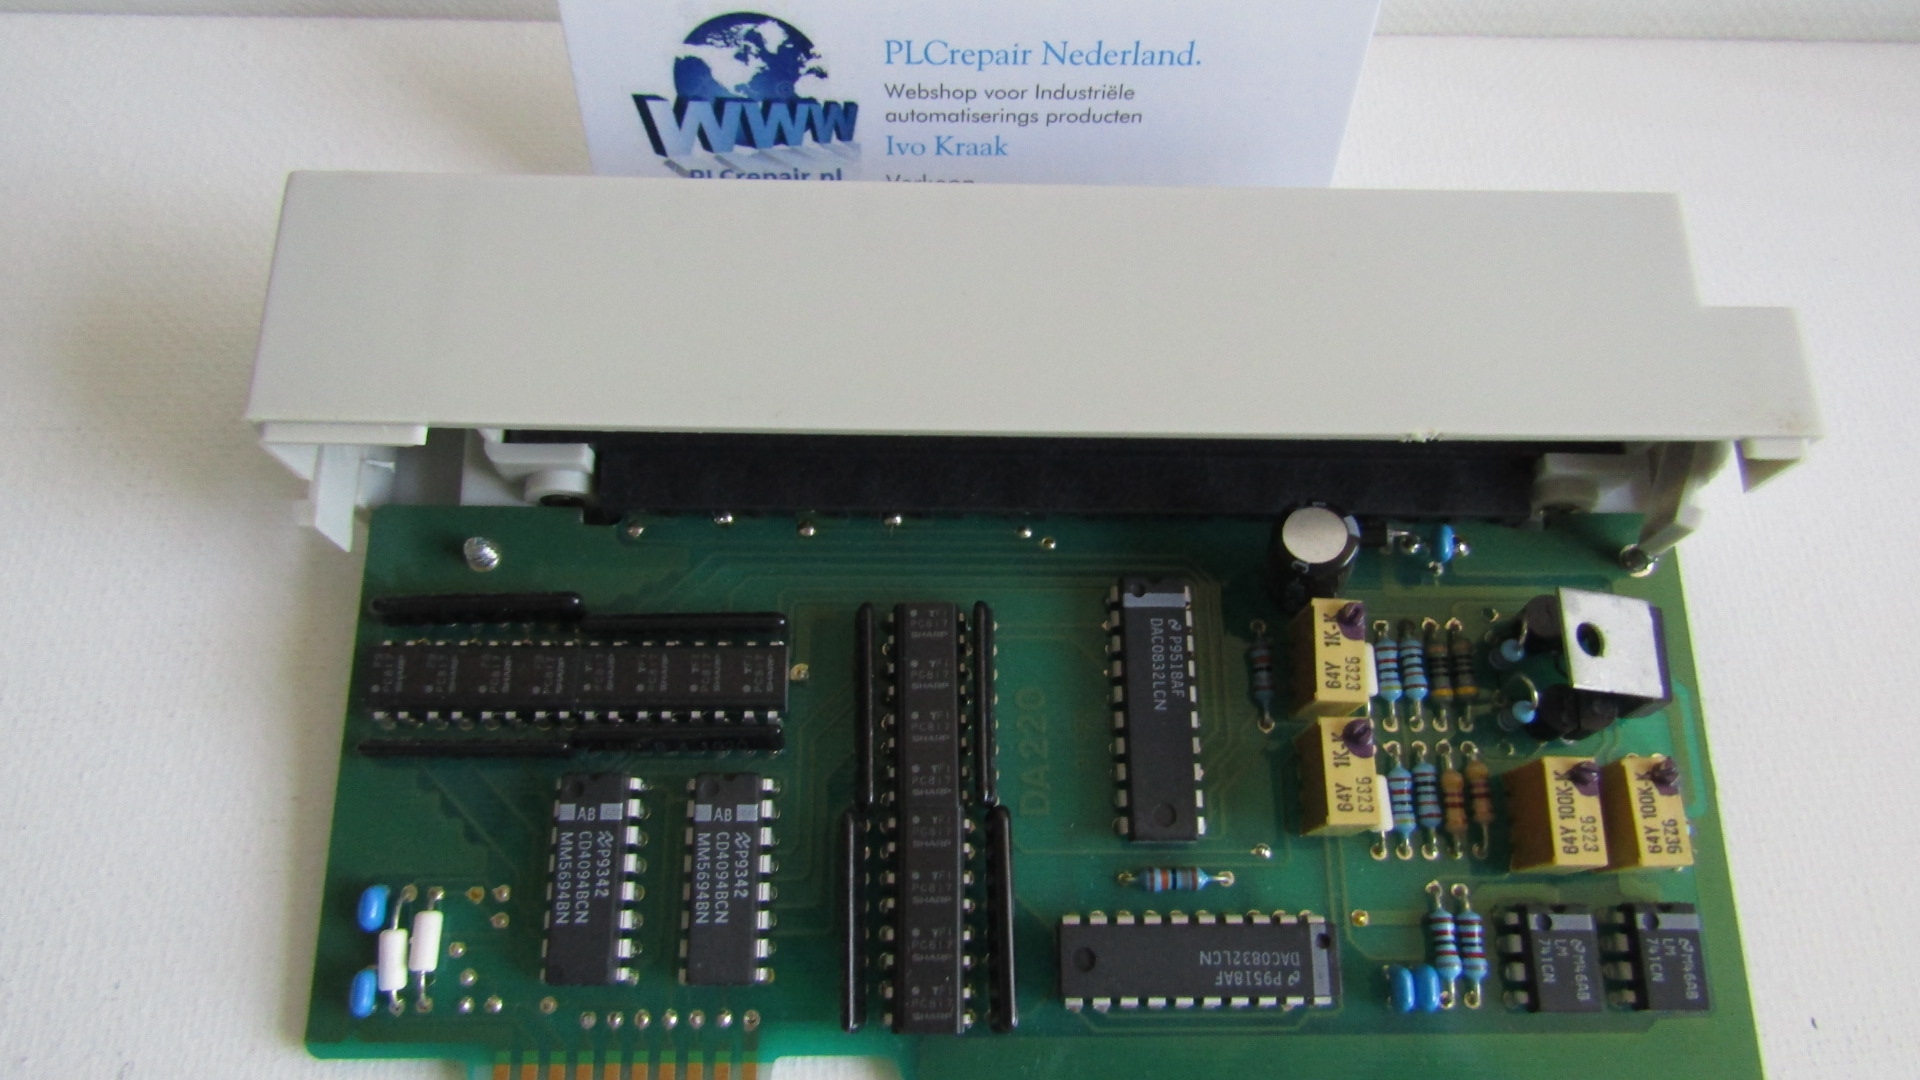 OAU-20 DC 0...10V Analog output card sprecher+shuh sestep